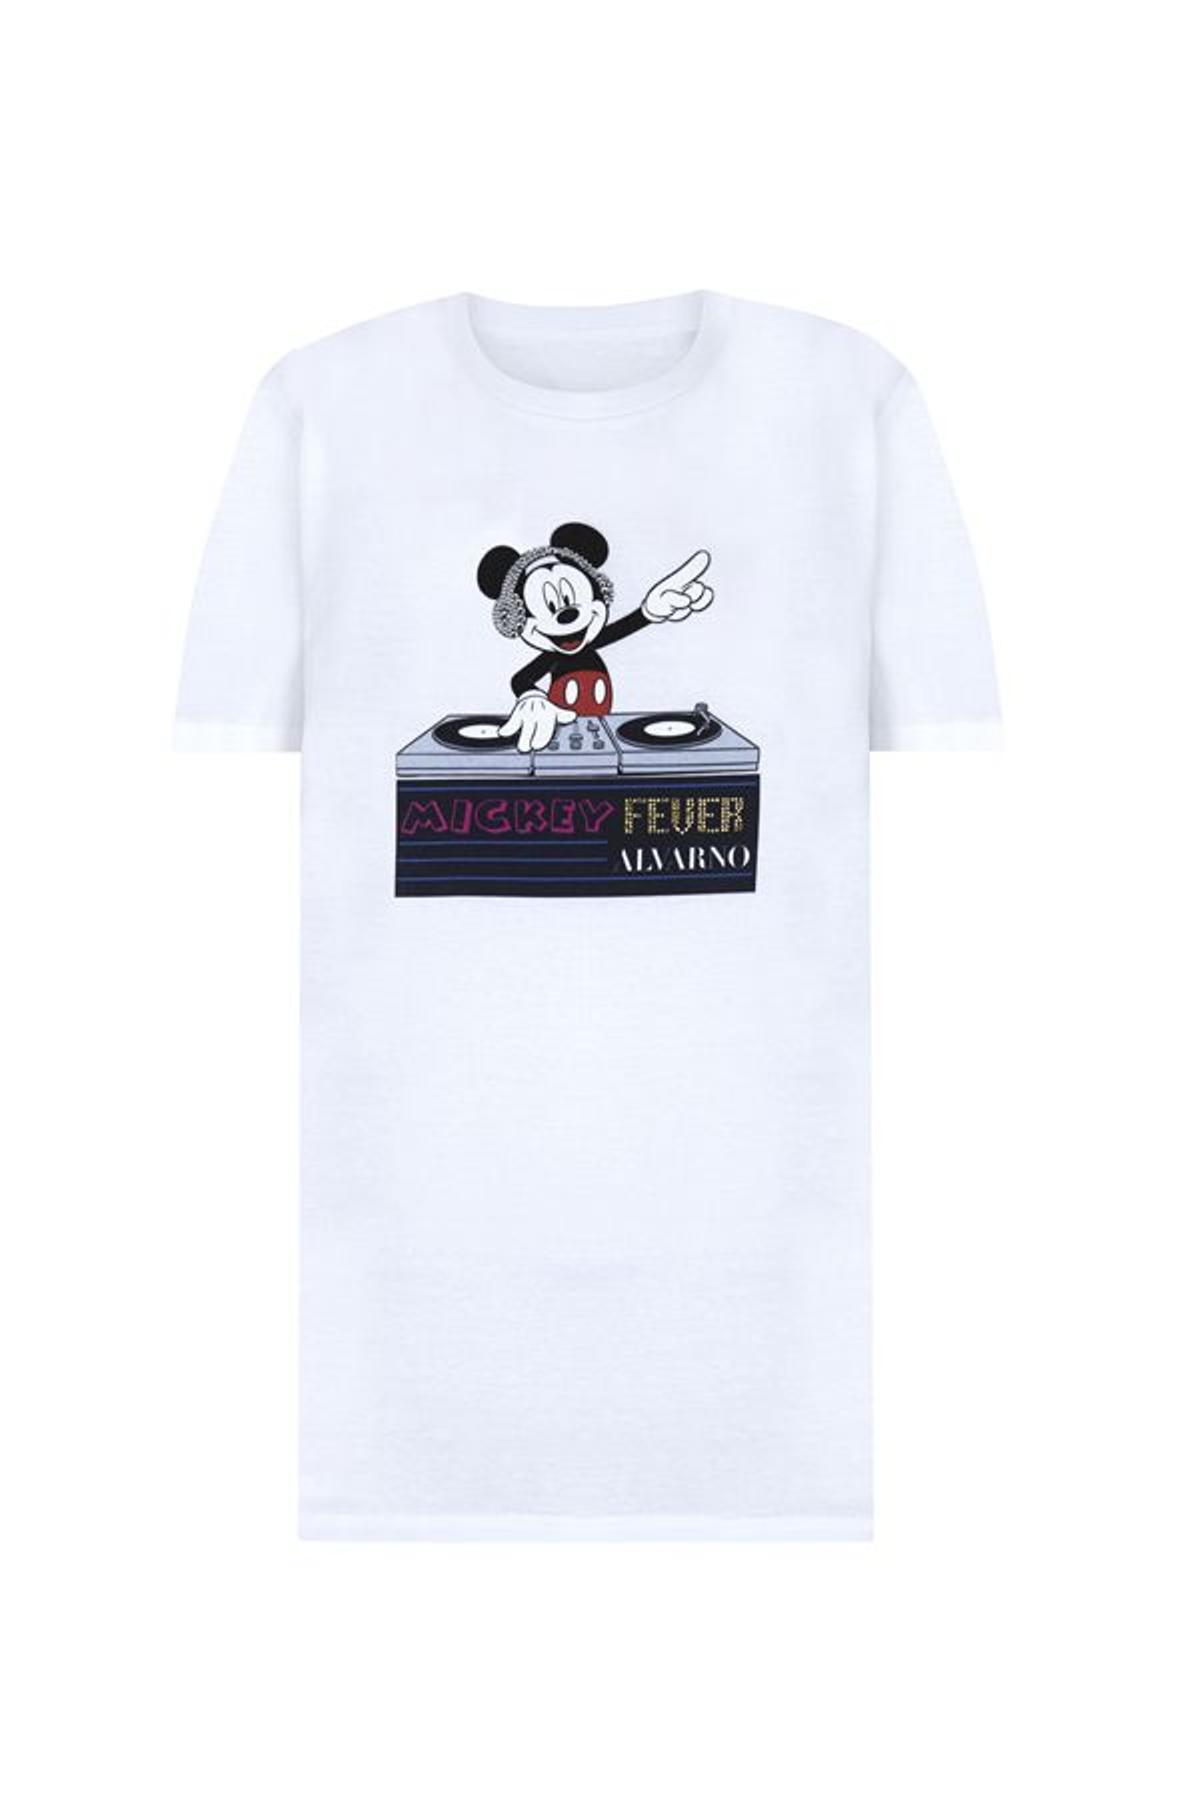 Camiseta de Mickey mouse diseñada por Alvarno